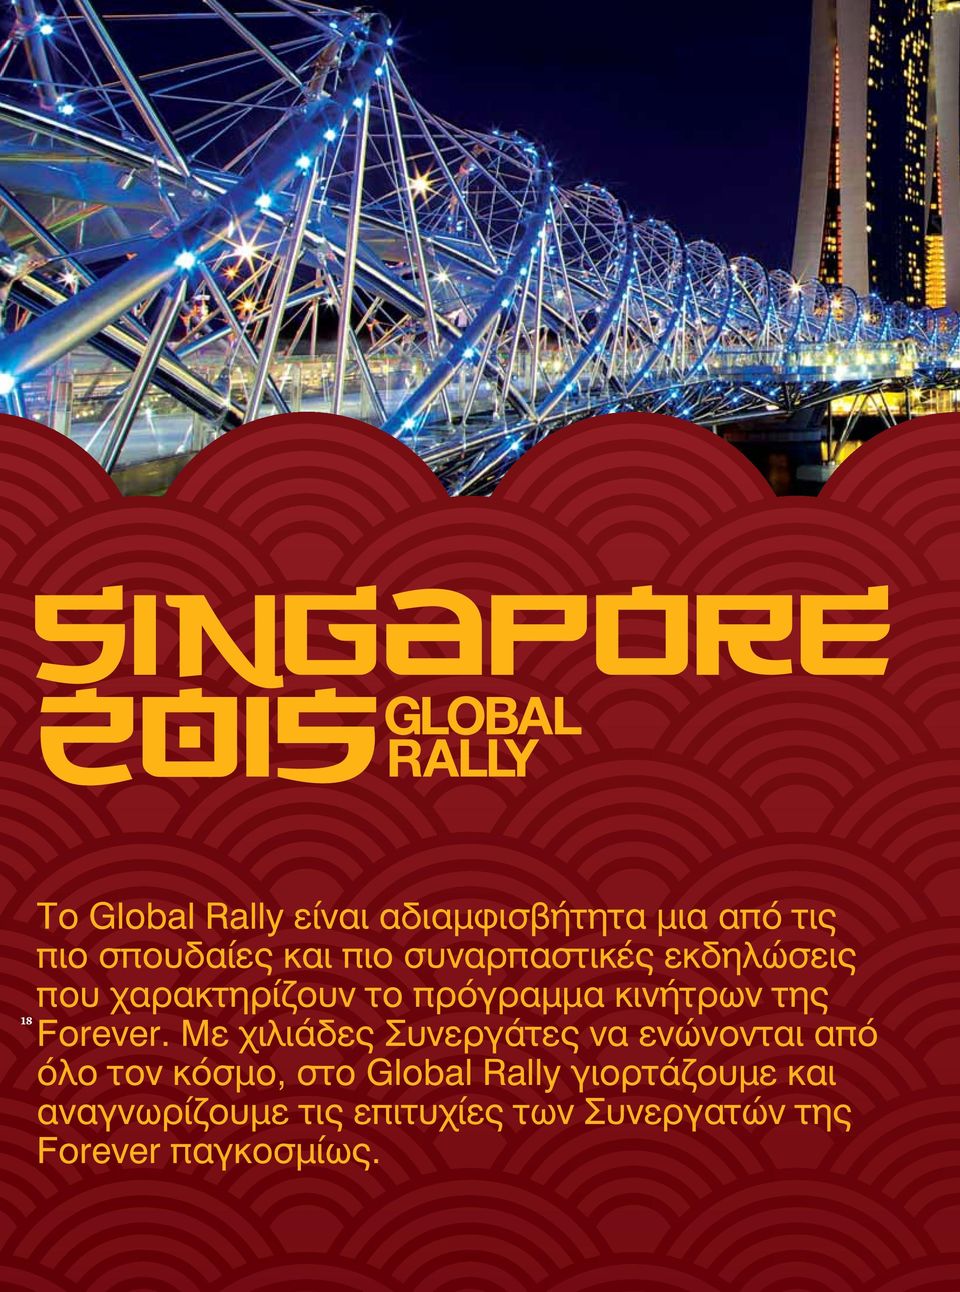 Με χιλιάδες Συνεργάτες να ενώνονται από όλο τον κόσμο, στο Global Rally